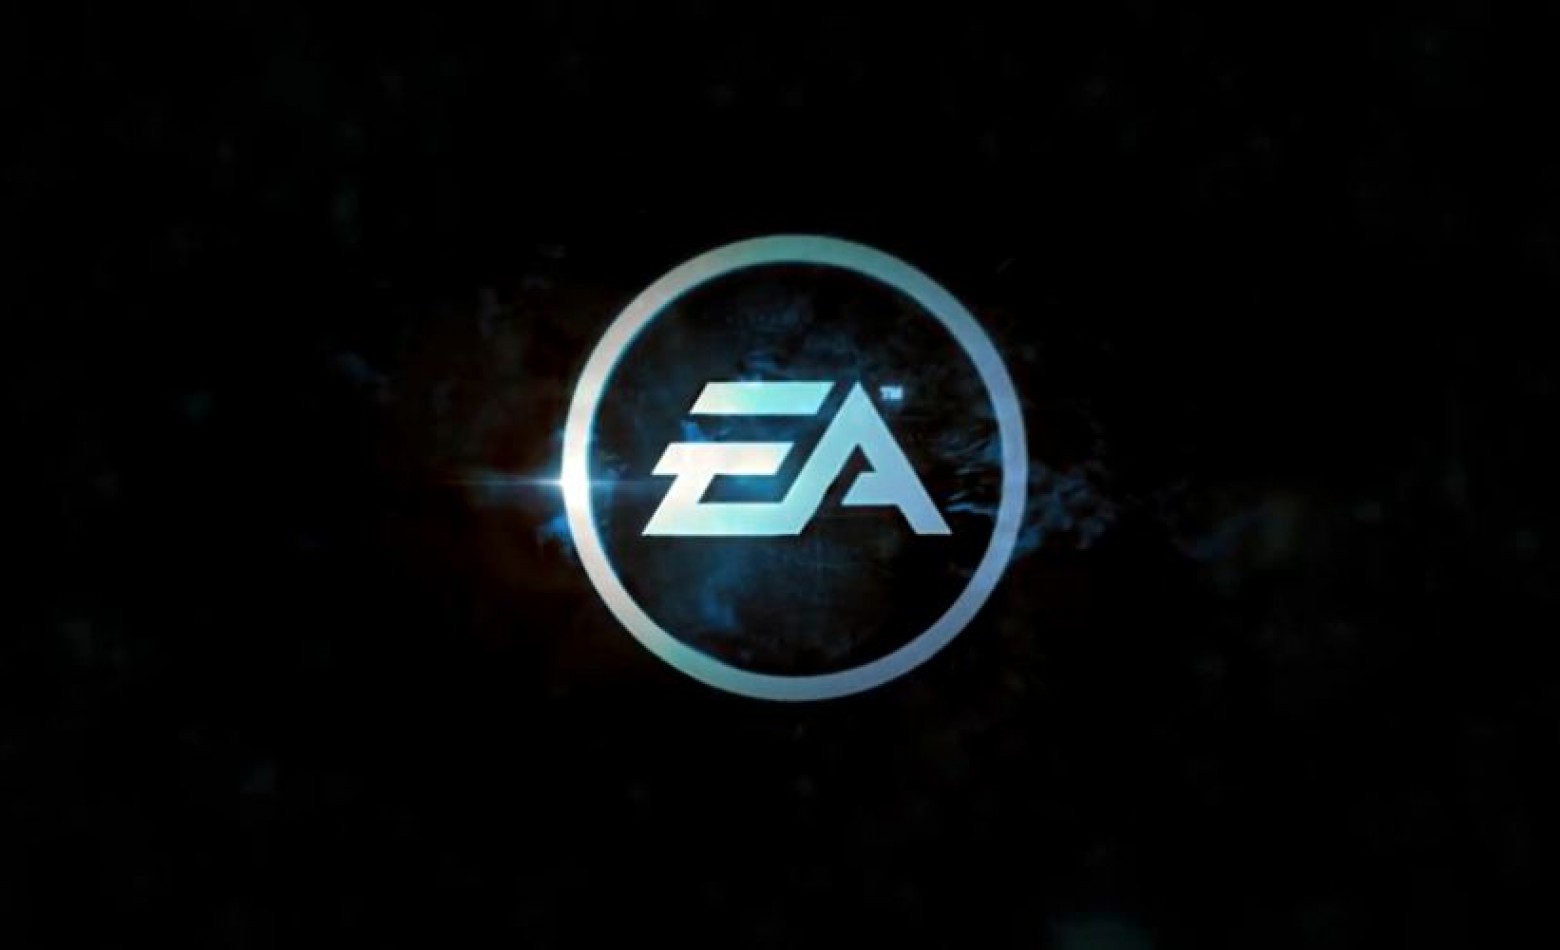 EA continua campeã de vendas na nova geração